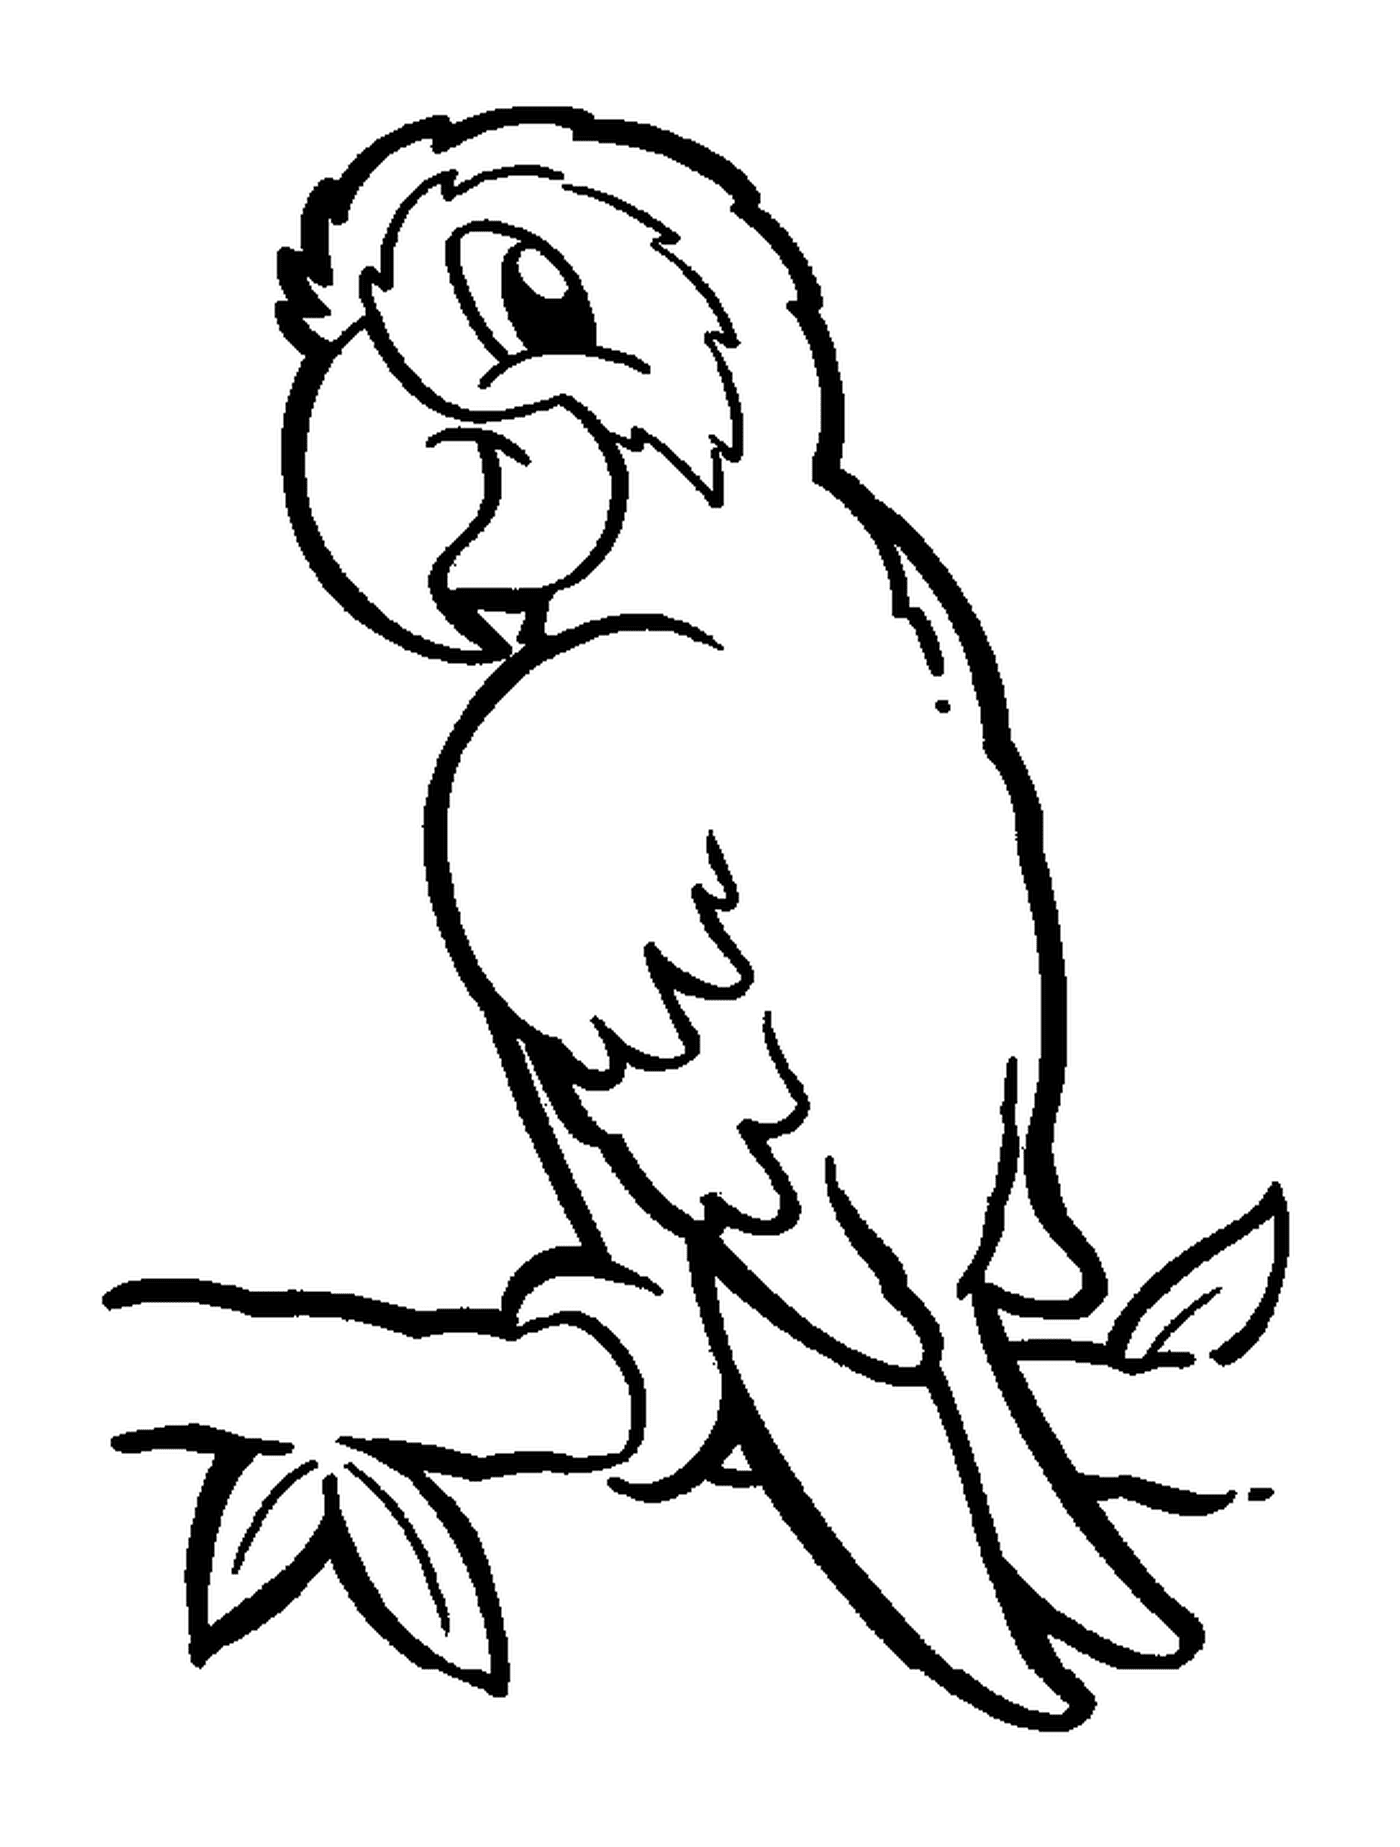  Parrot, uccello esotico con piumaggio colorato 